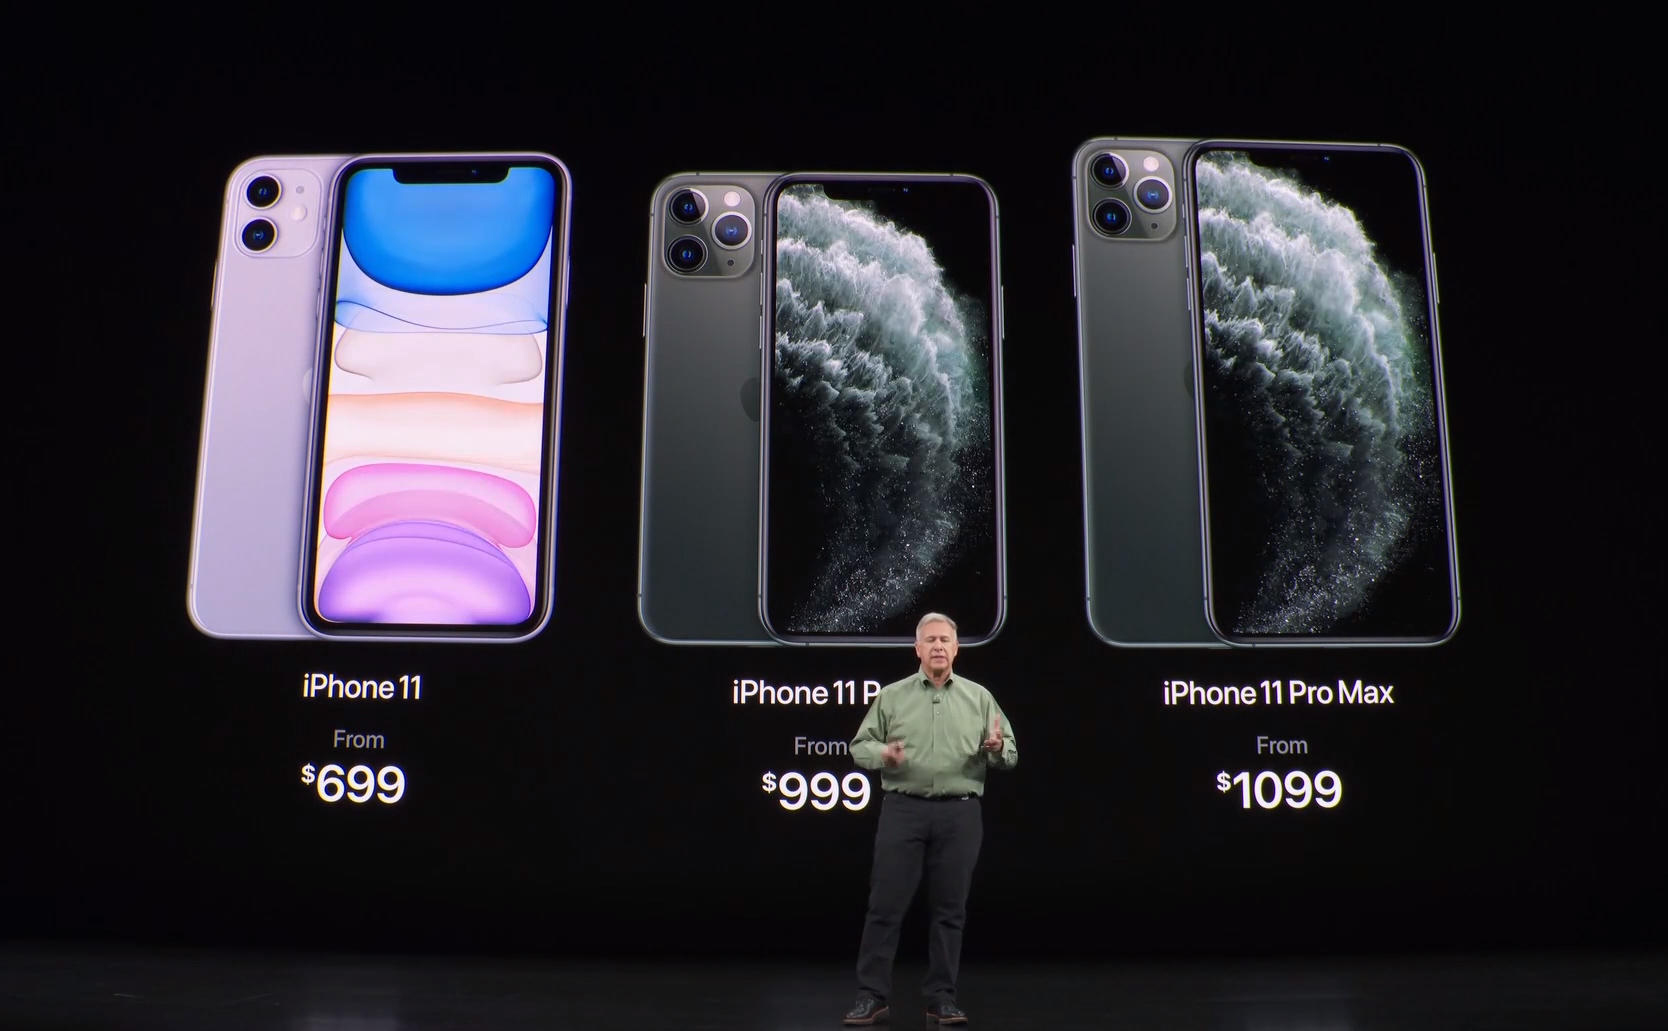 在发布会上,苹果推出了三款iphone:iphone 11,iphone 11 pro以及